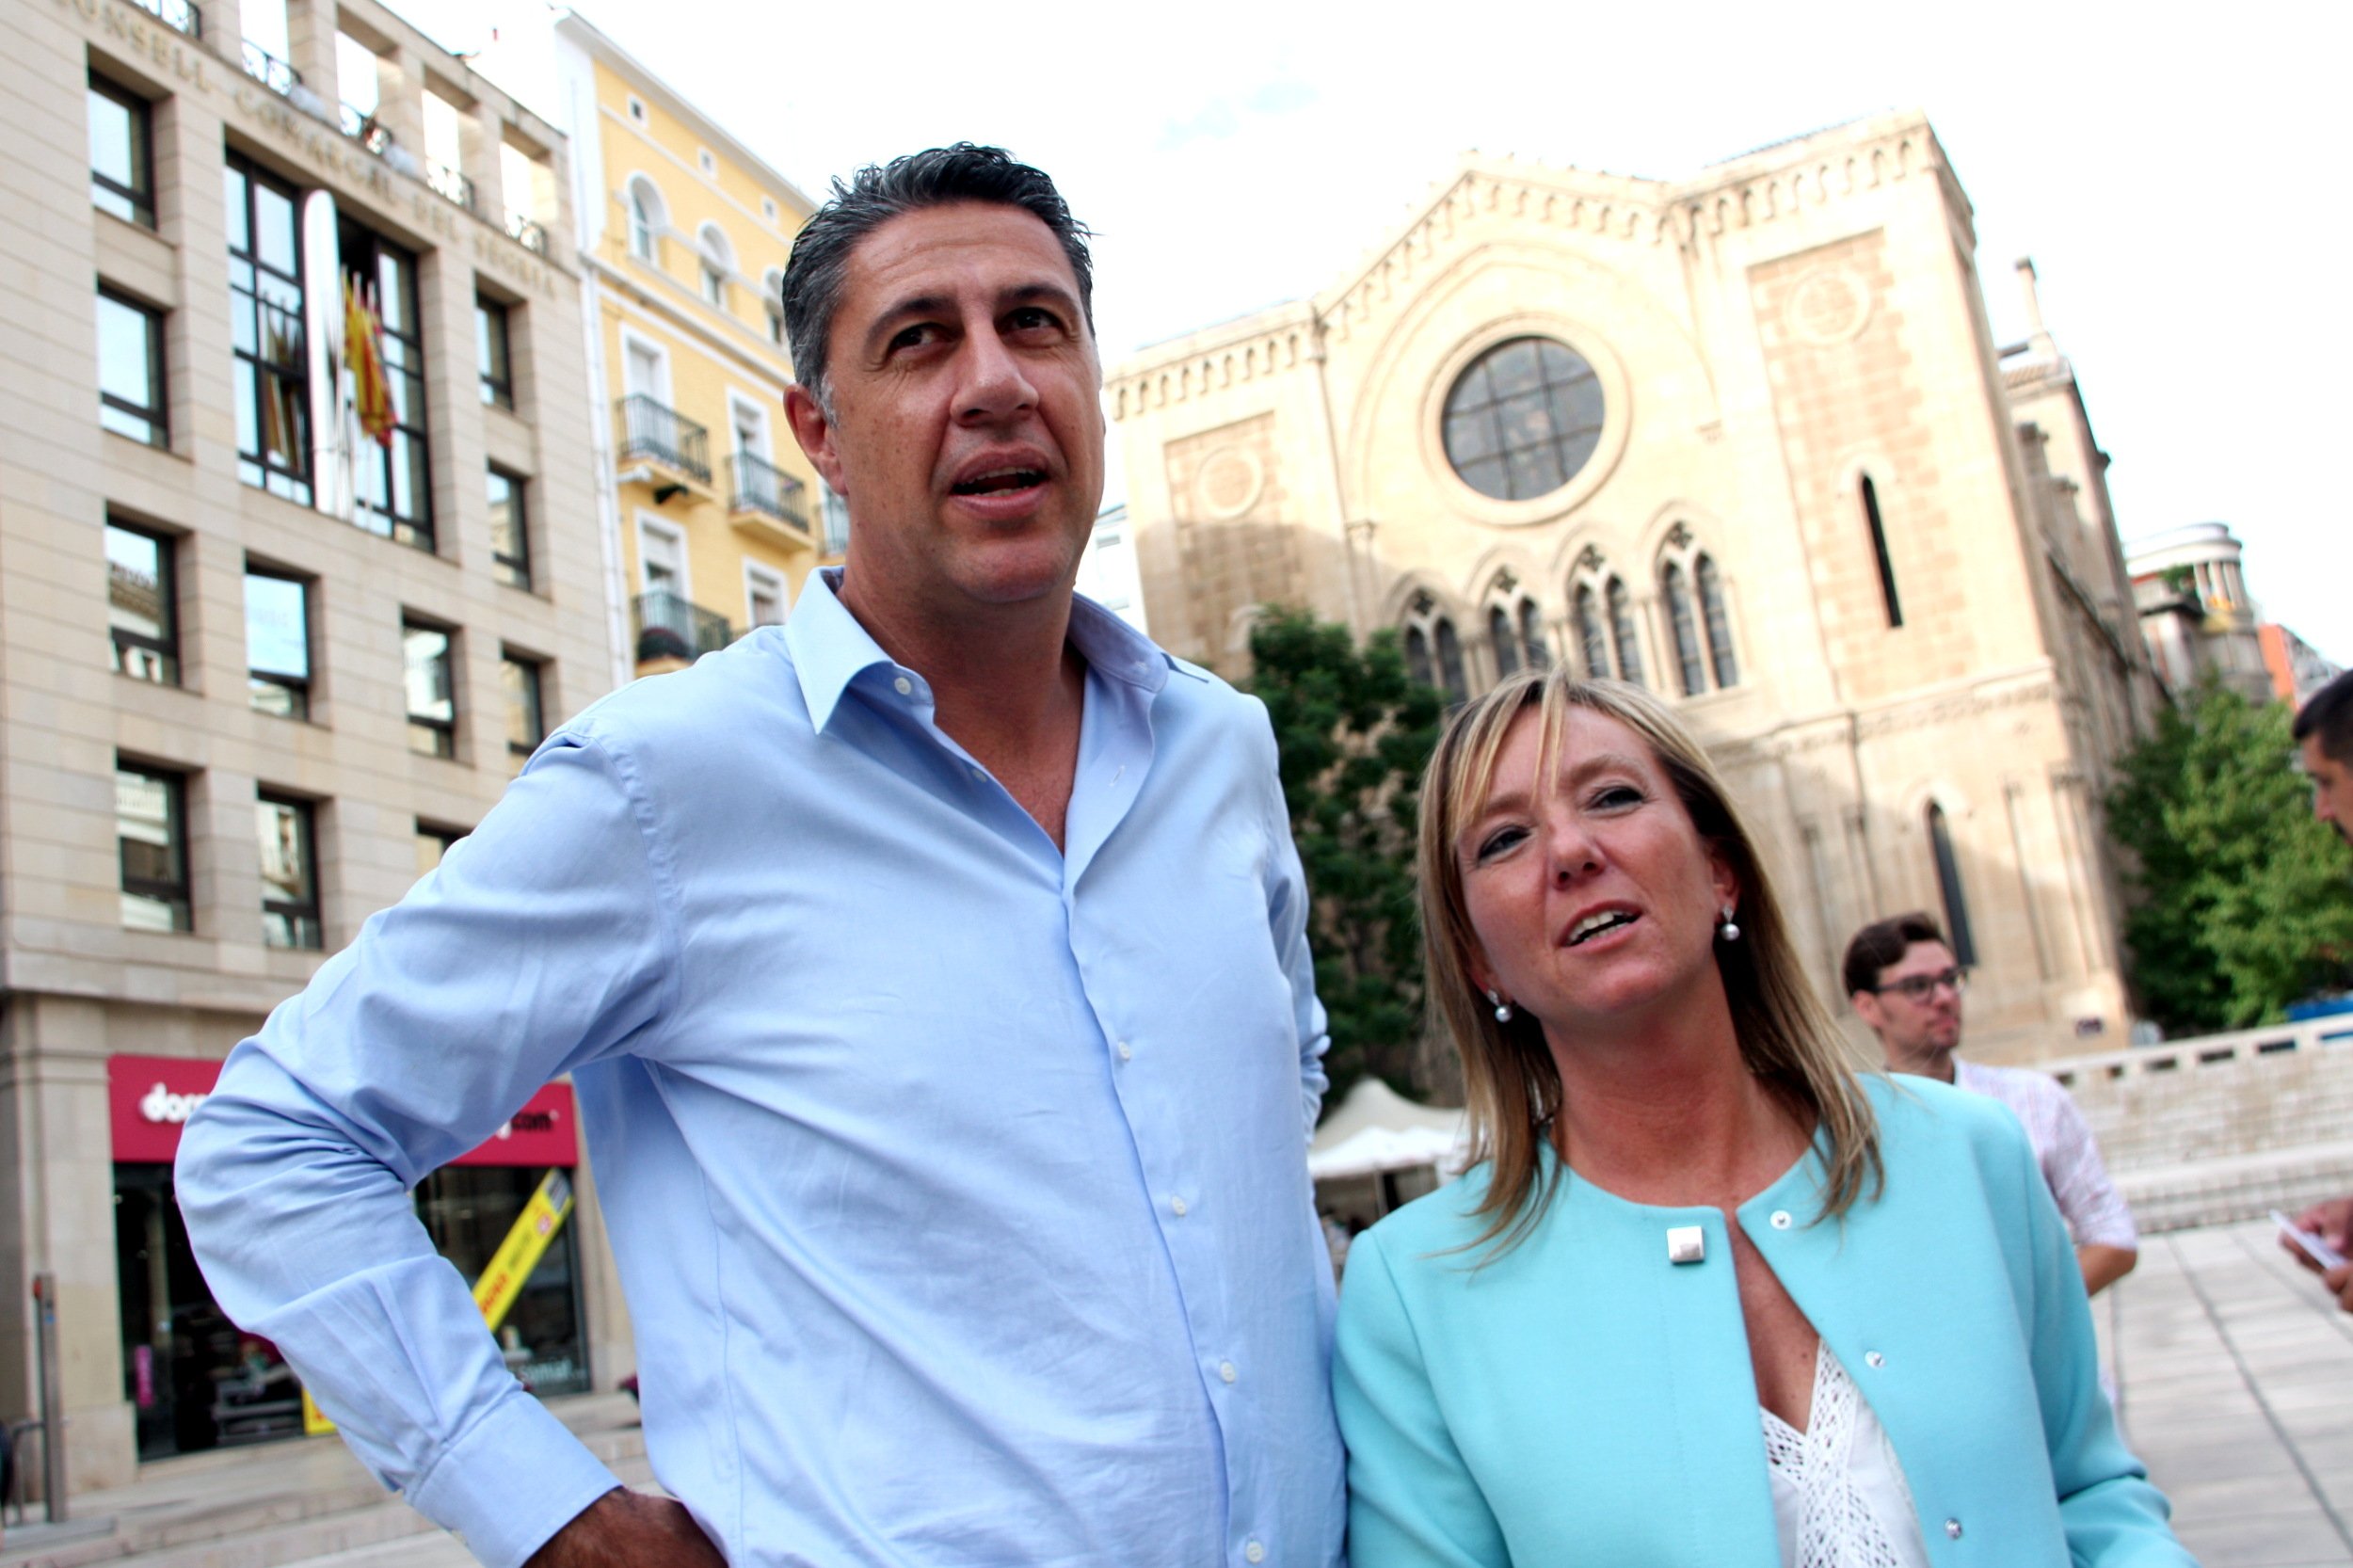 La Junta Electoral de Lleida obliga a sacar los lazos amarillos de todos los espacios públicos